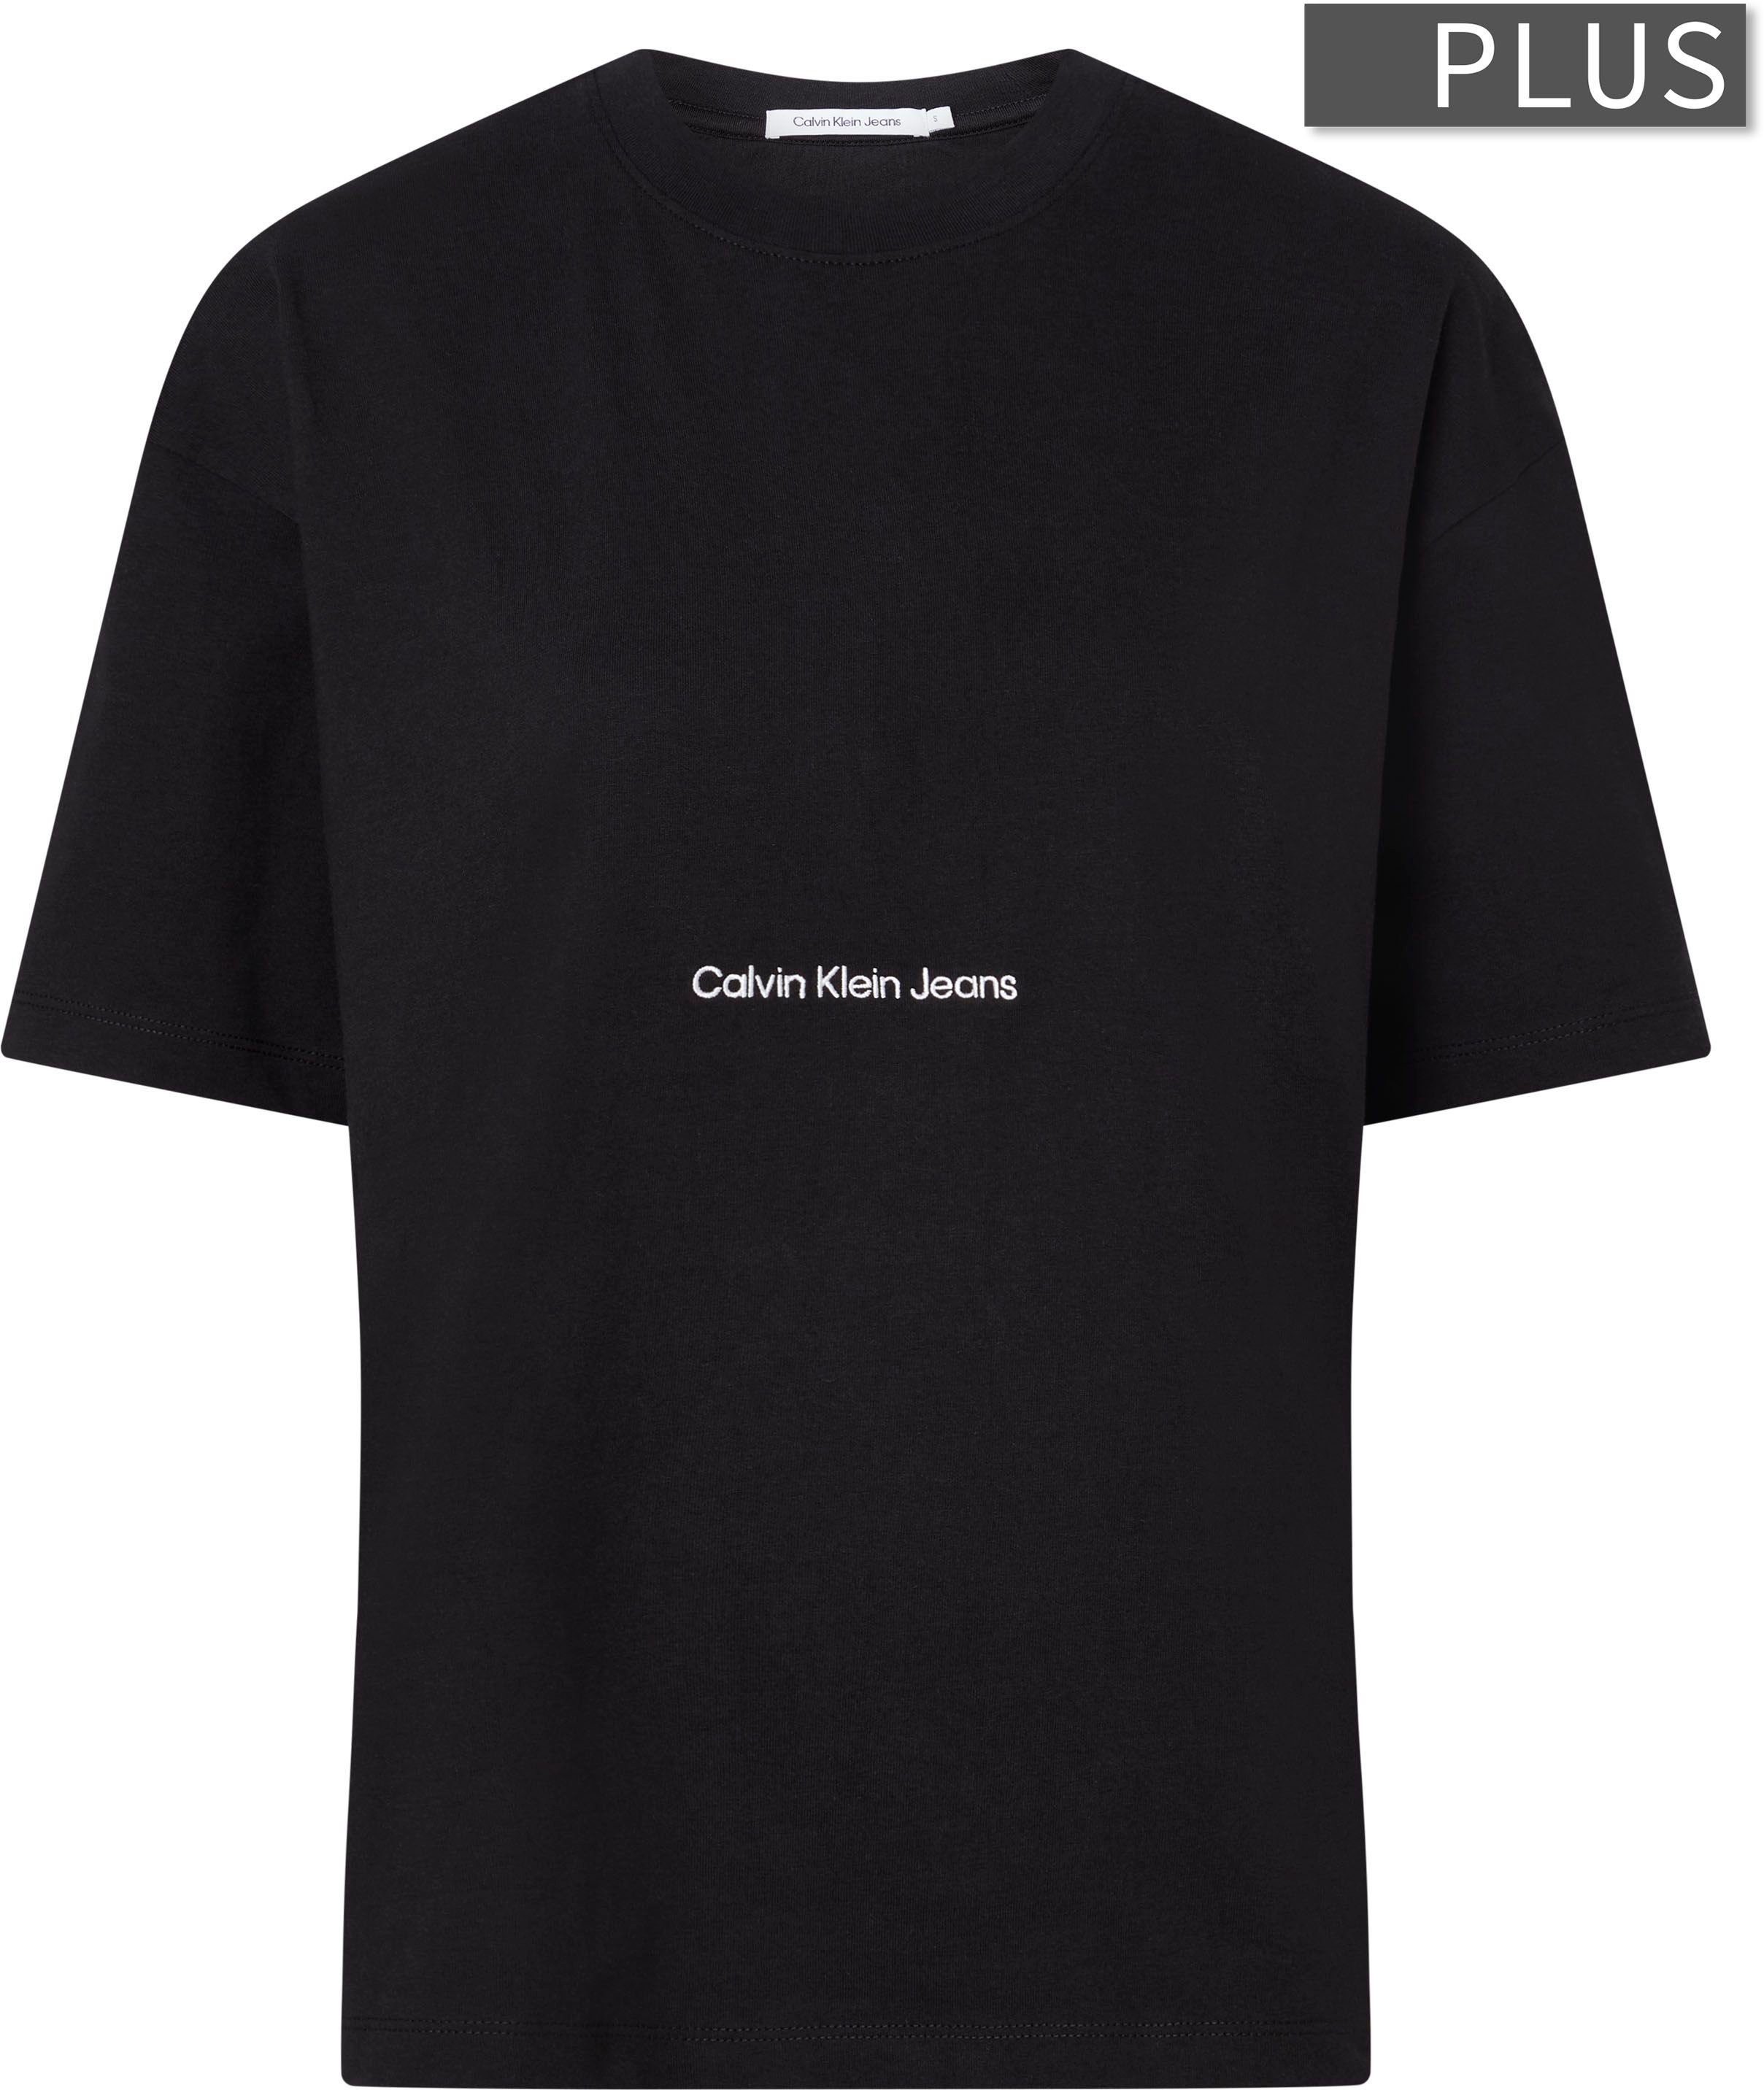 Calvin Klein Jeans mit T-Shirt Plus schwarz Rundhalsausschnitt